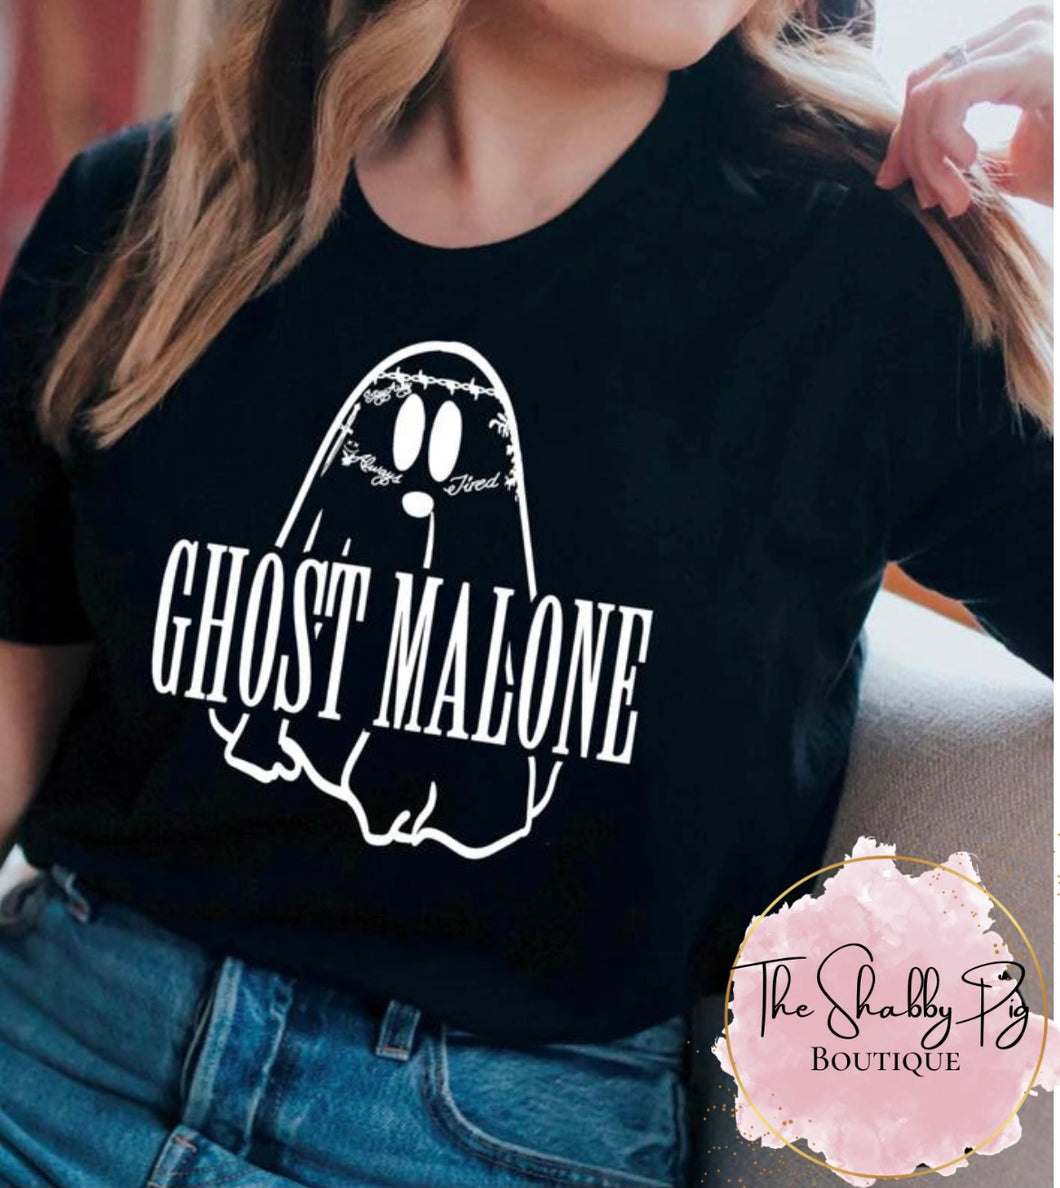 Ghost Malone T-Shirt